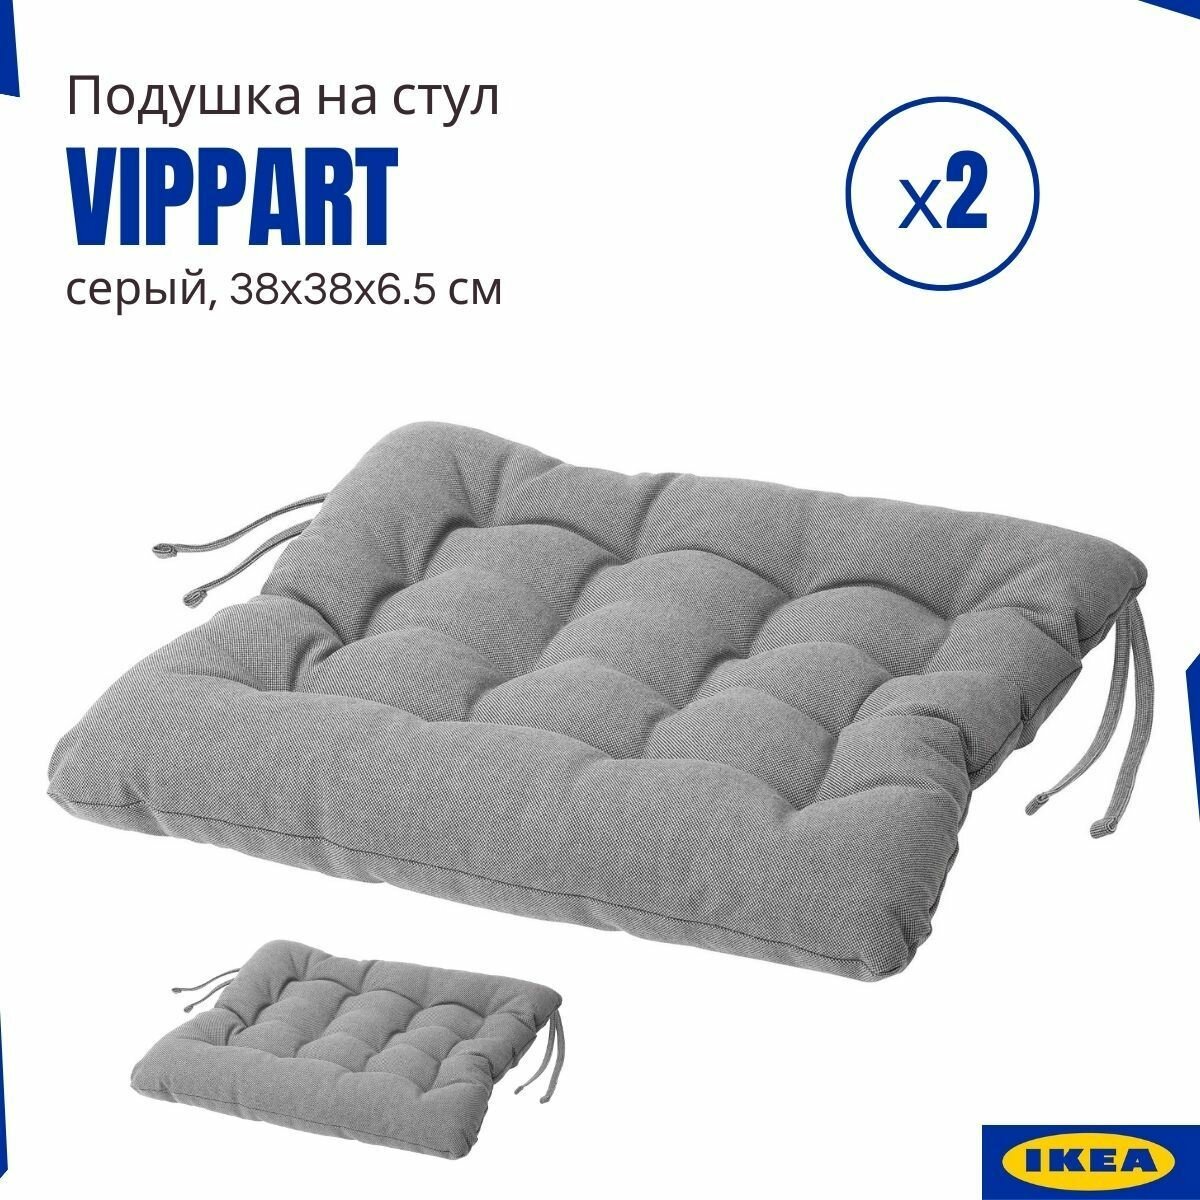 Подушки на стул Vippart IKEA, серый 2 шт, подушки на стулья для кухни, с завязками, Виппэрт икеа